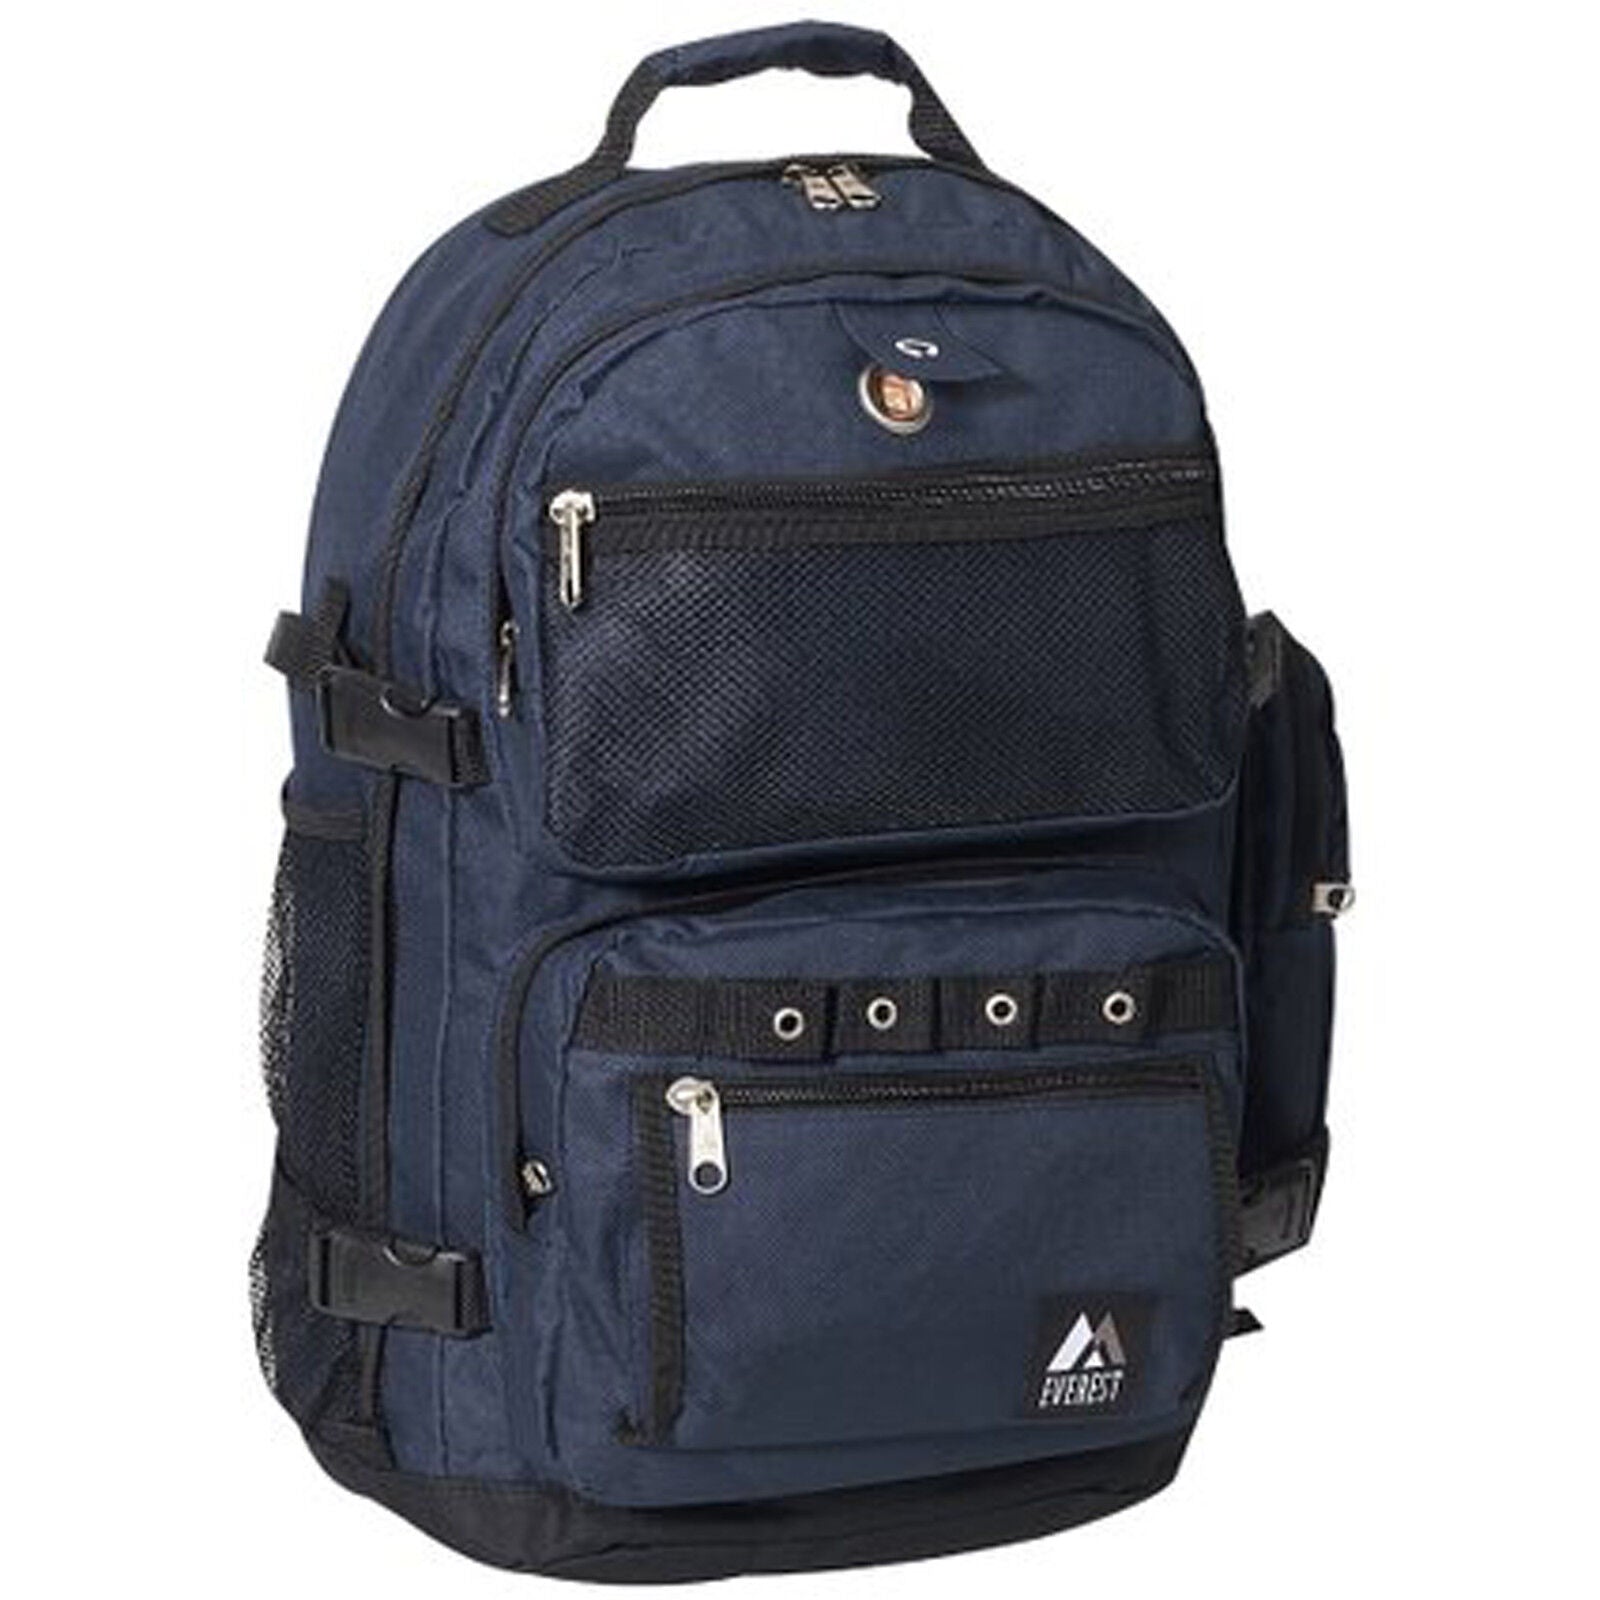 Everest Backpack 3045R Choose Color - BeReadyFoods.com